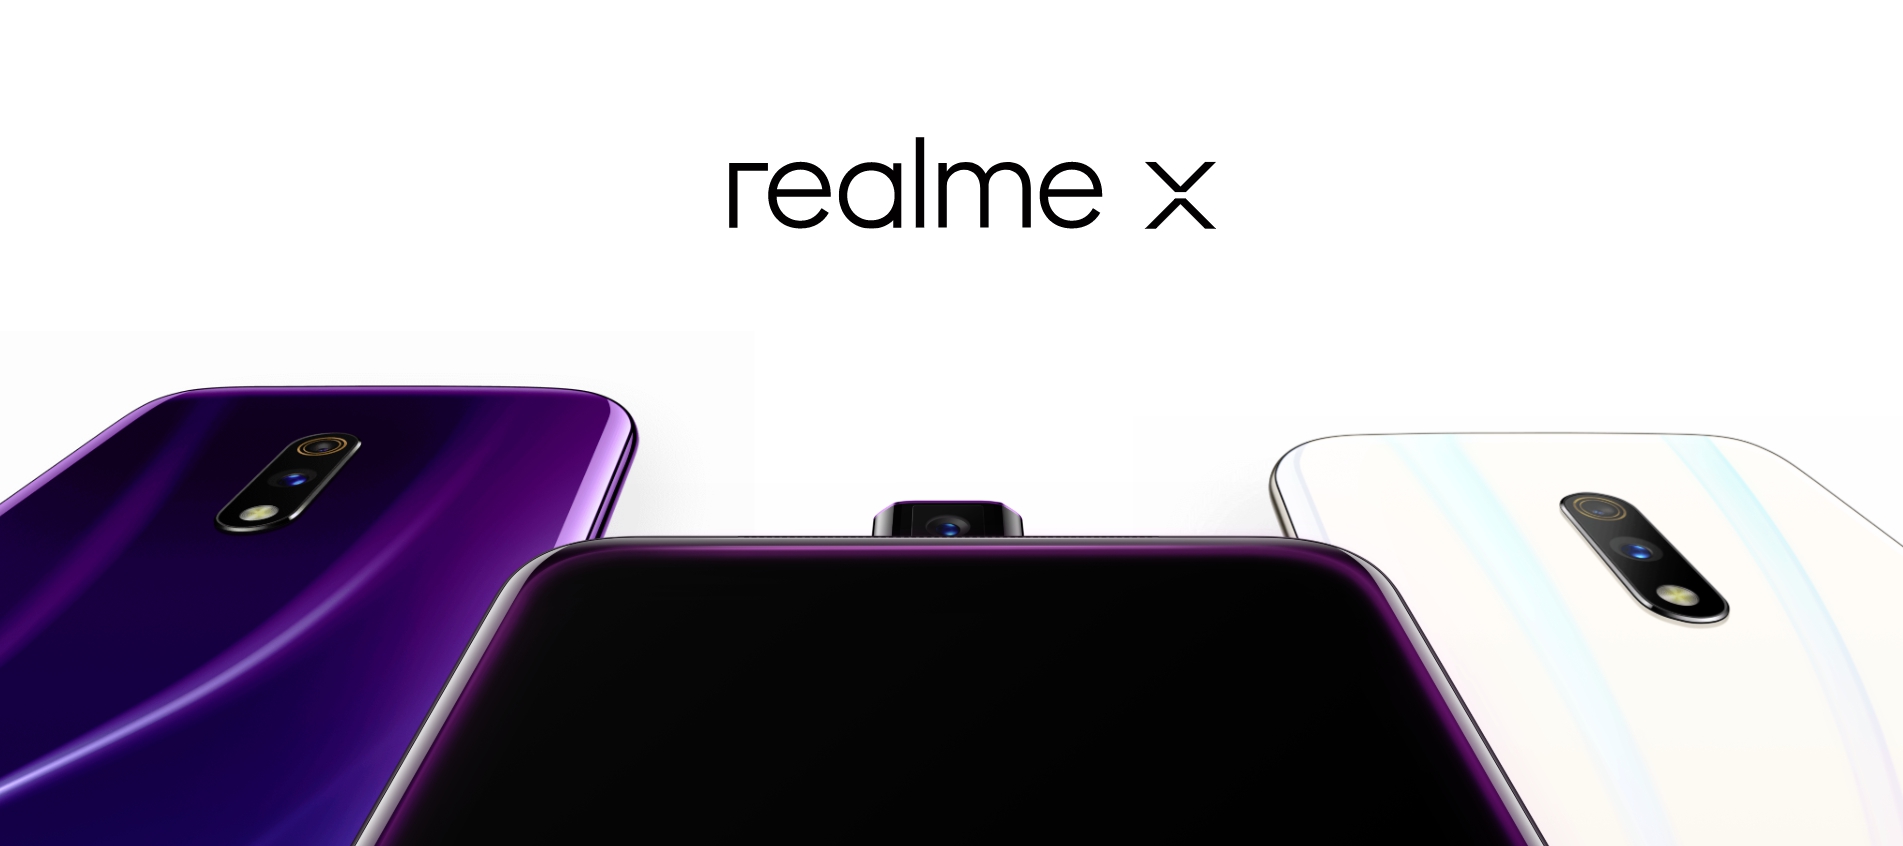 เปิดตัว Realme X เรือธง สเปคแรงราคาถูก ที่มาพร้อมกับกล้องป๊อปอัพ